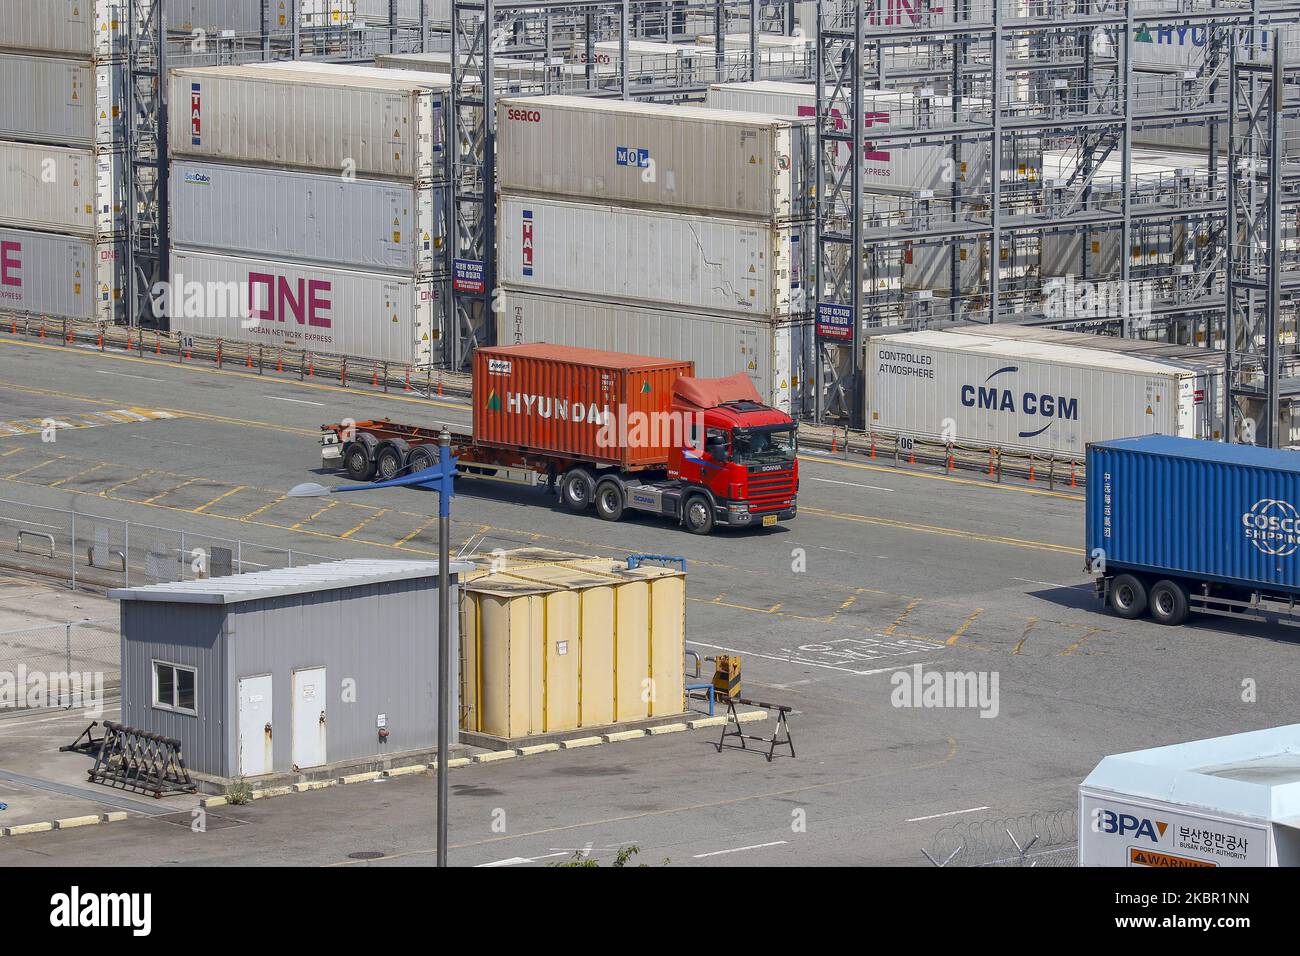 A View-Szene des neuen Containerhafens in Busan, Südkorea, am 10. Juni 2020. Die südkoreanische Wirtschaft wird in diesem Jahr voraussichtlich 1,2 Prozent einbrechen, da die Coronavirus-Pandemie und die Lockdown-Maßnahmen den globalen Handel und Konsum erschüttert haben, sagte die Organisation für wirtschaftliche Zusammenarbeit und Entwicklung (OECD) am Mittwoch. Die aktualisierte Prognose, die die schärfste Kontraktion seit der asiatischen Finanzkrise von 1998 sein würde, markierte eine drastische Herabstufung gegenüber der OECD-Prognose vom März mit einer Expansion von 2 Prozent. Die jüngste Prognose der OECD ist düsterer als eine Prognose der Bank of Korea (BOK), die den Kore prognostiziert hat Stockfoto